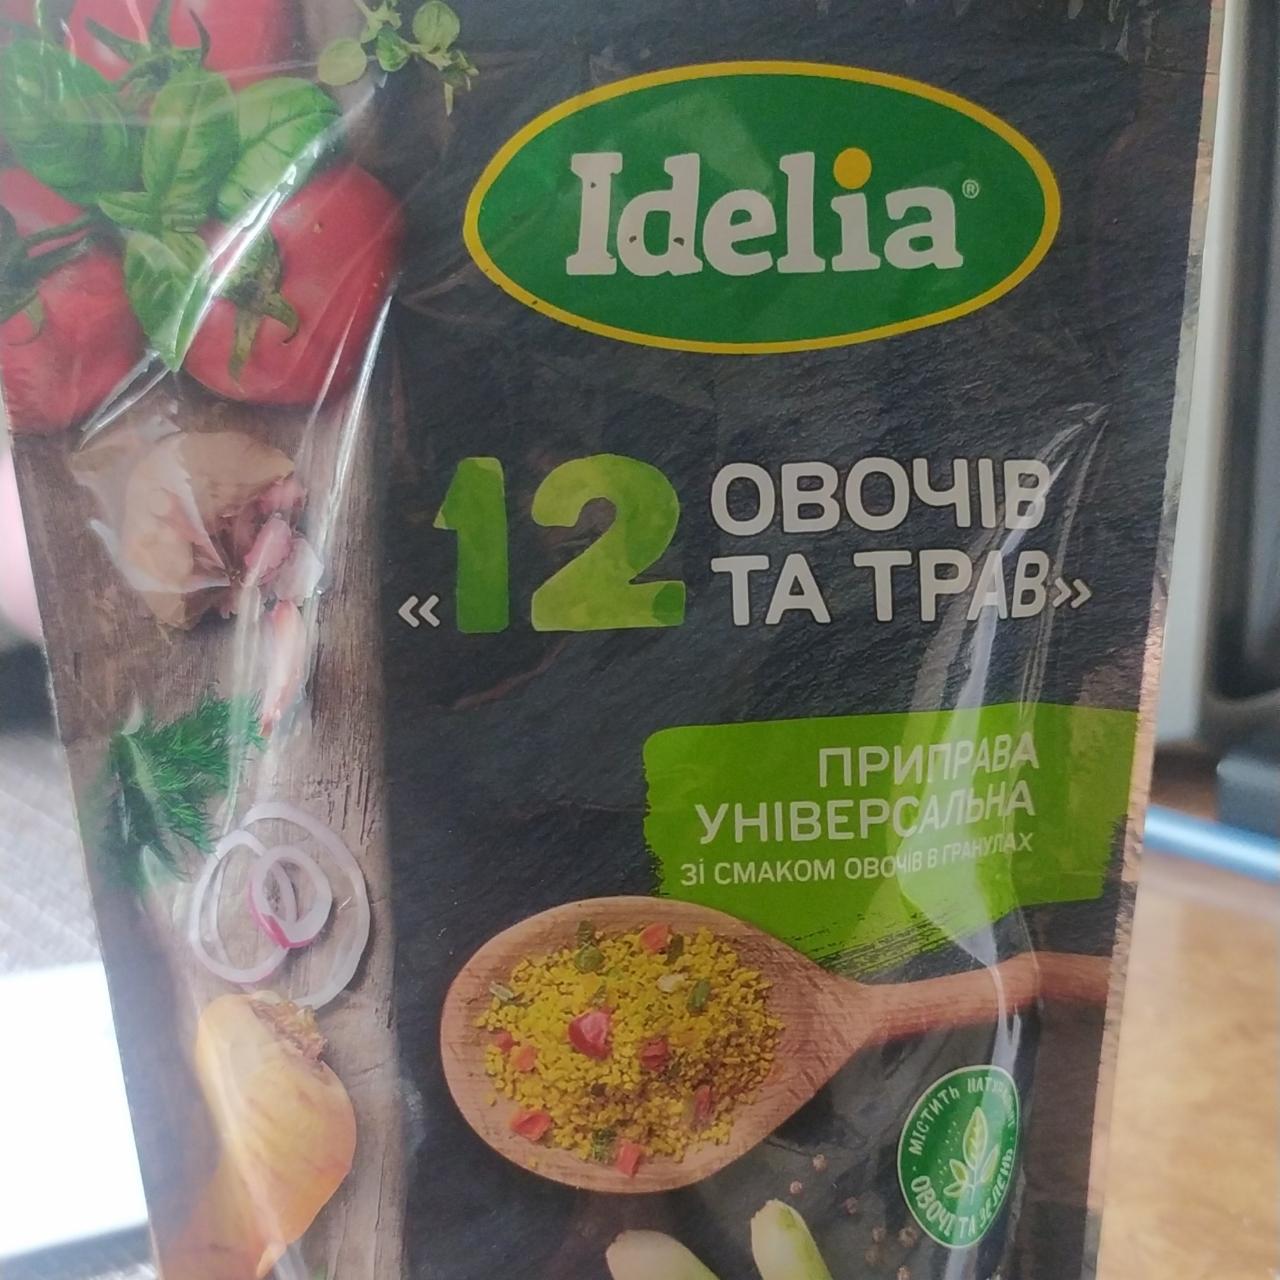 Фото - Концентрати харчові Приправа універсальна зі смаком овочів 12 овочів та трав в гранулах Idelia